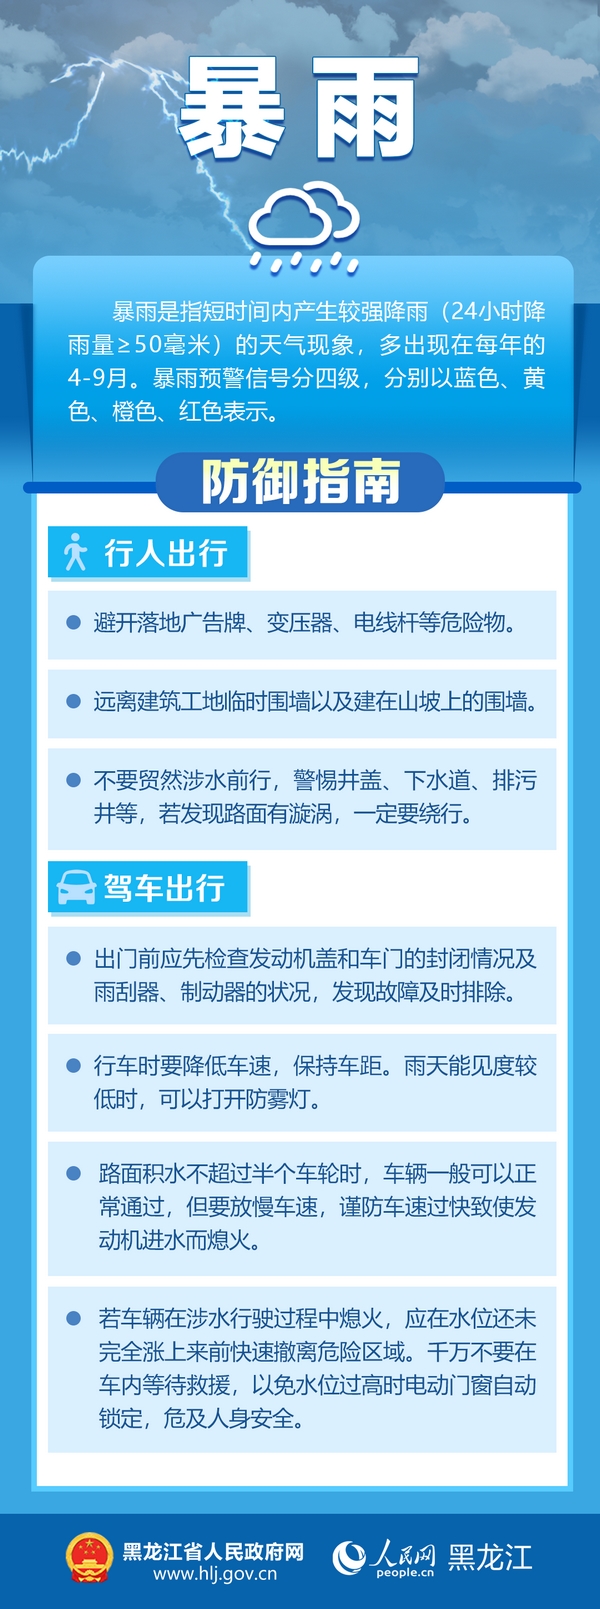 黑龙江省气象台发布暴雨红色预警